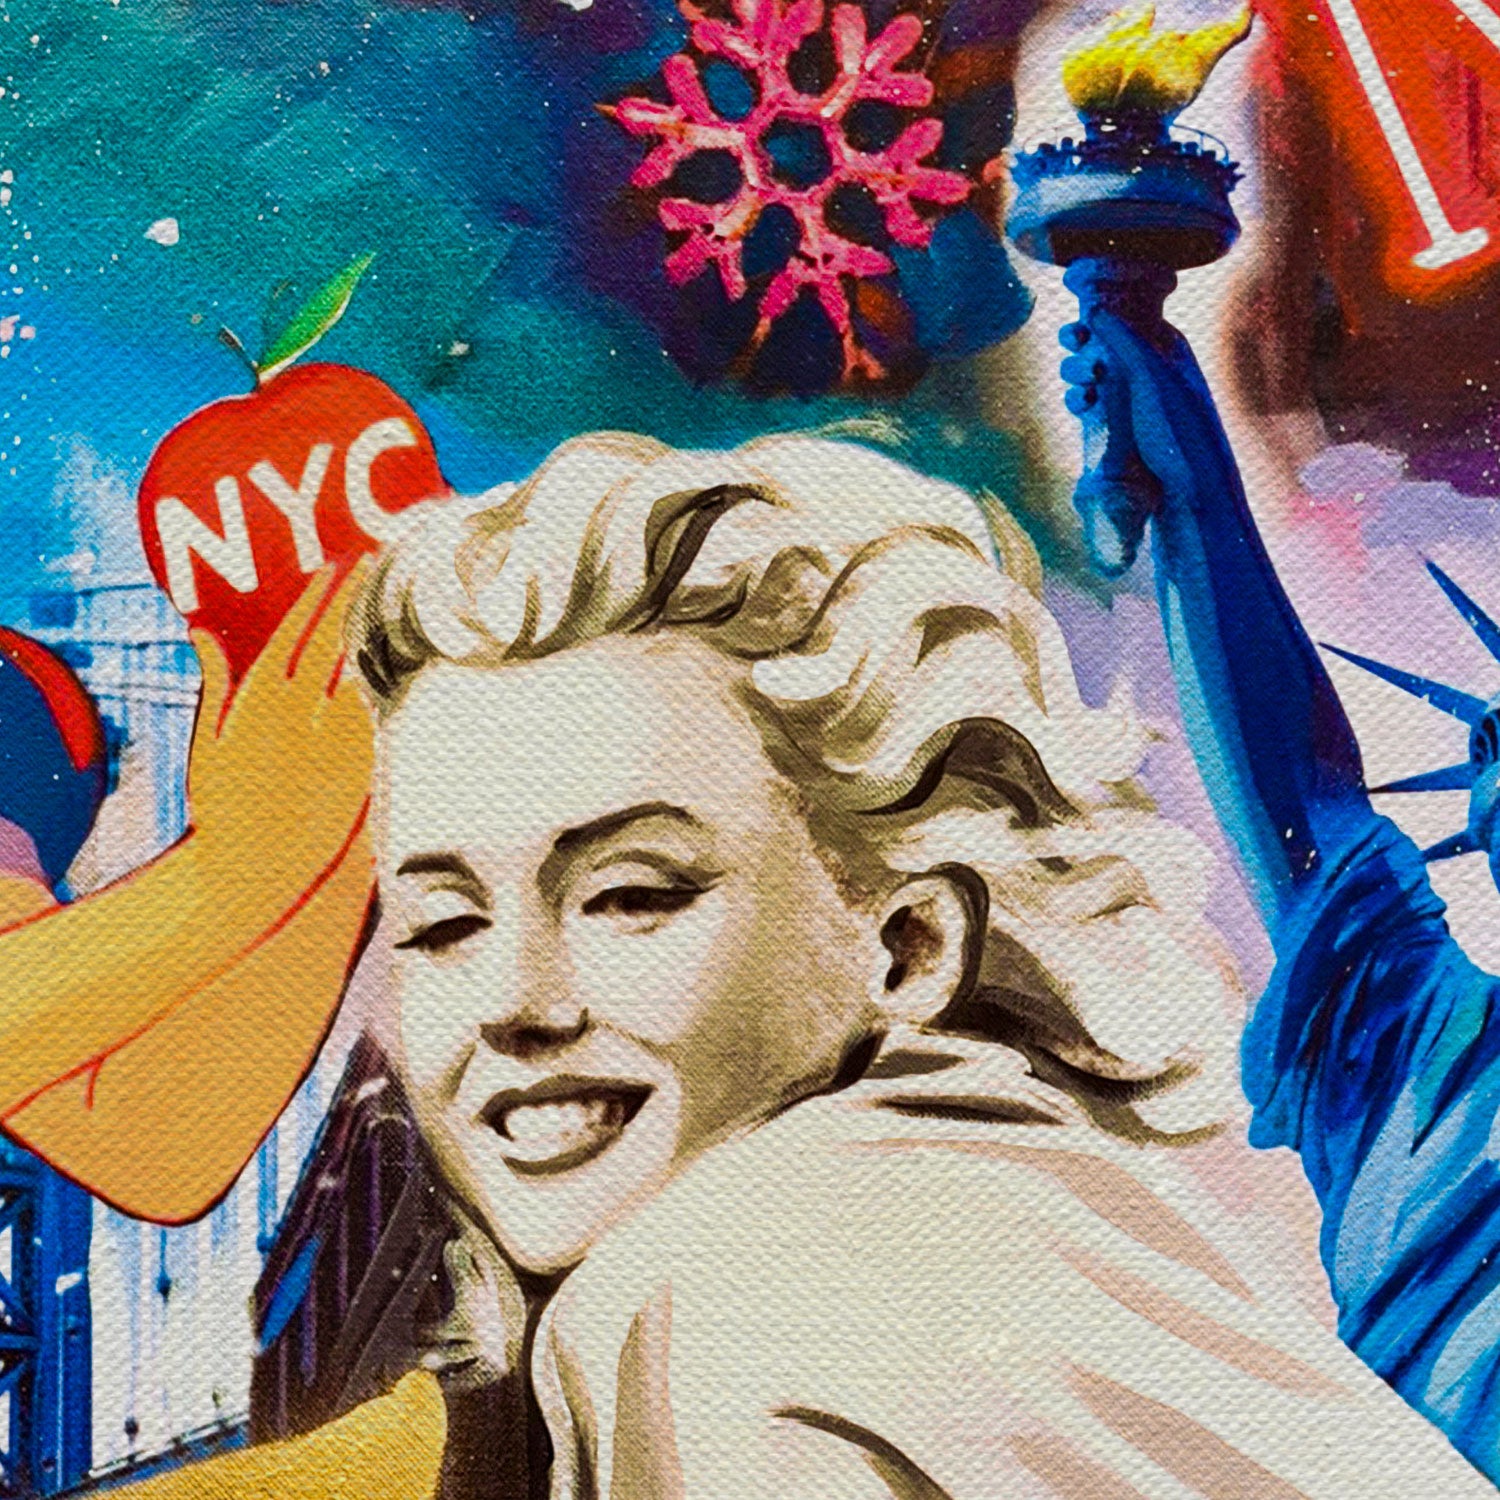 Marilyn Monroe In NY City Of Dreams Canvas Wall Art